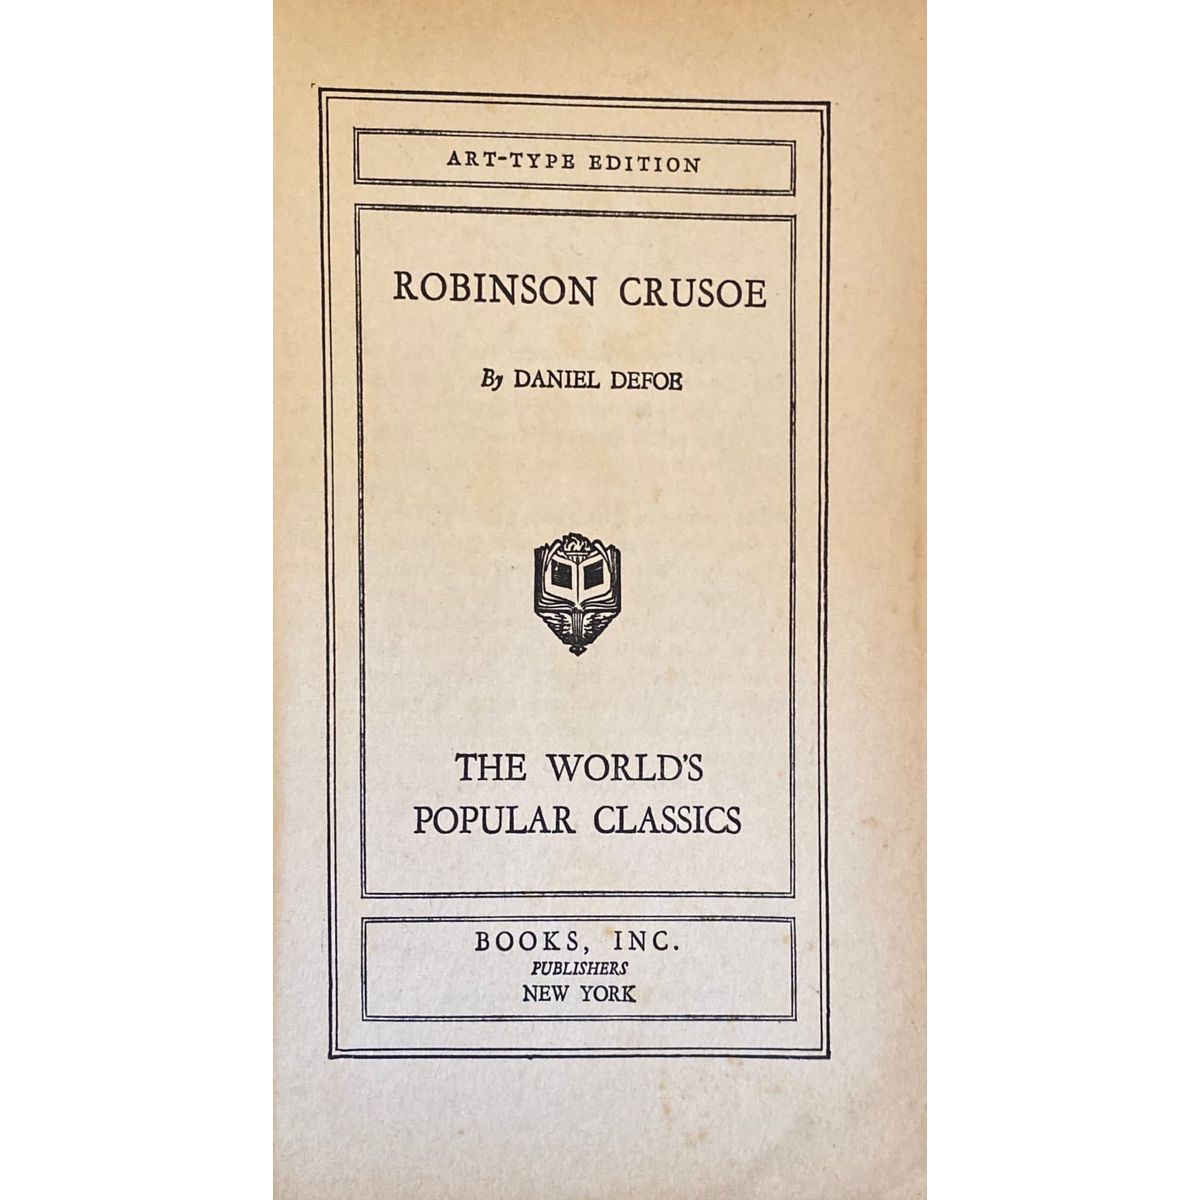 Robinson Crusoe by Daniel Defoe, Art-Type Edition [1920]